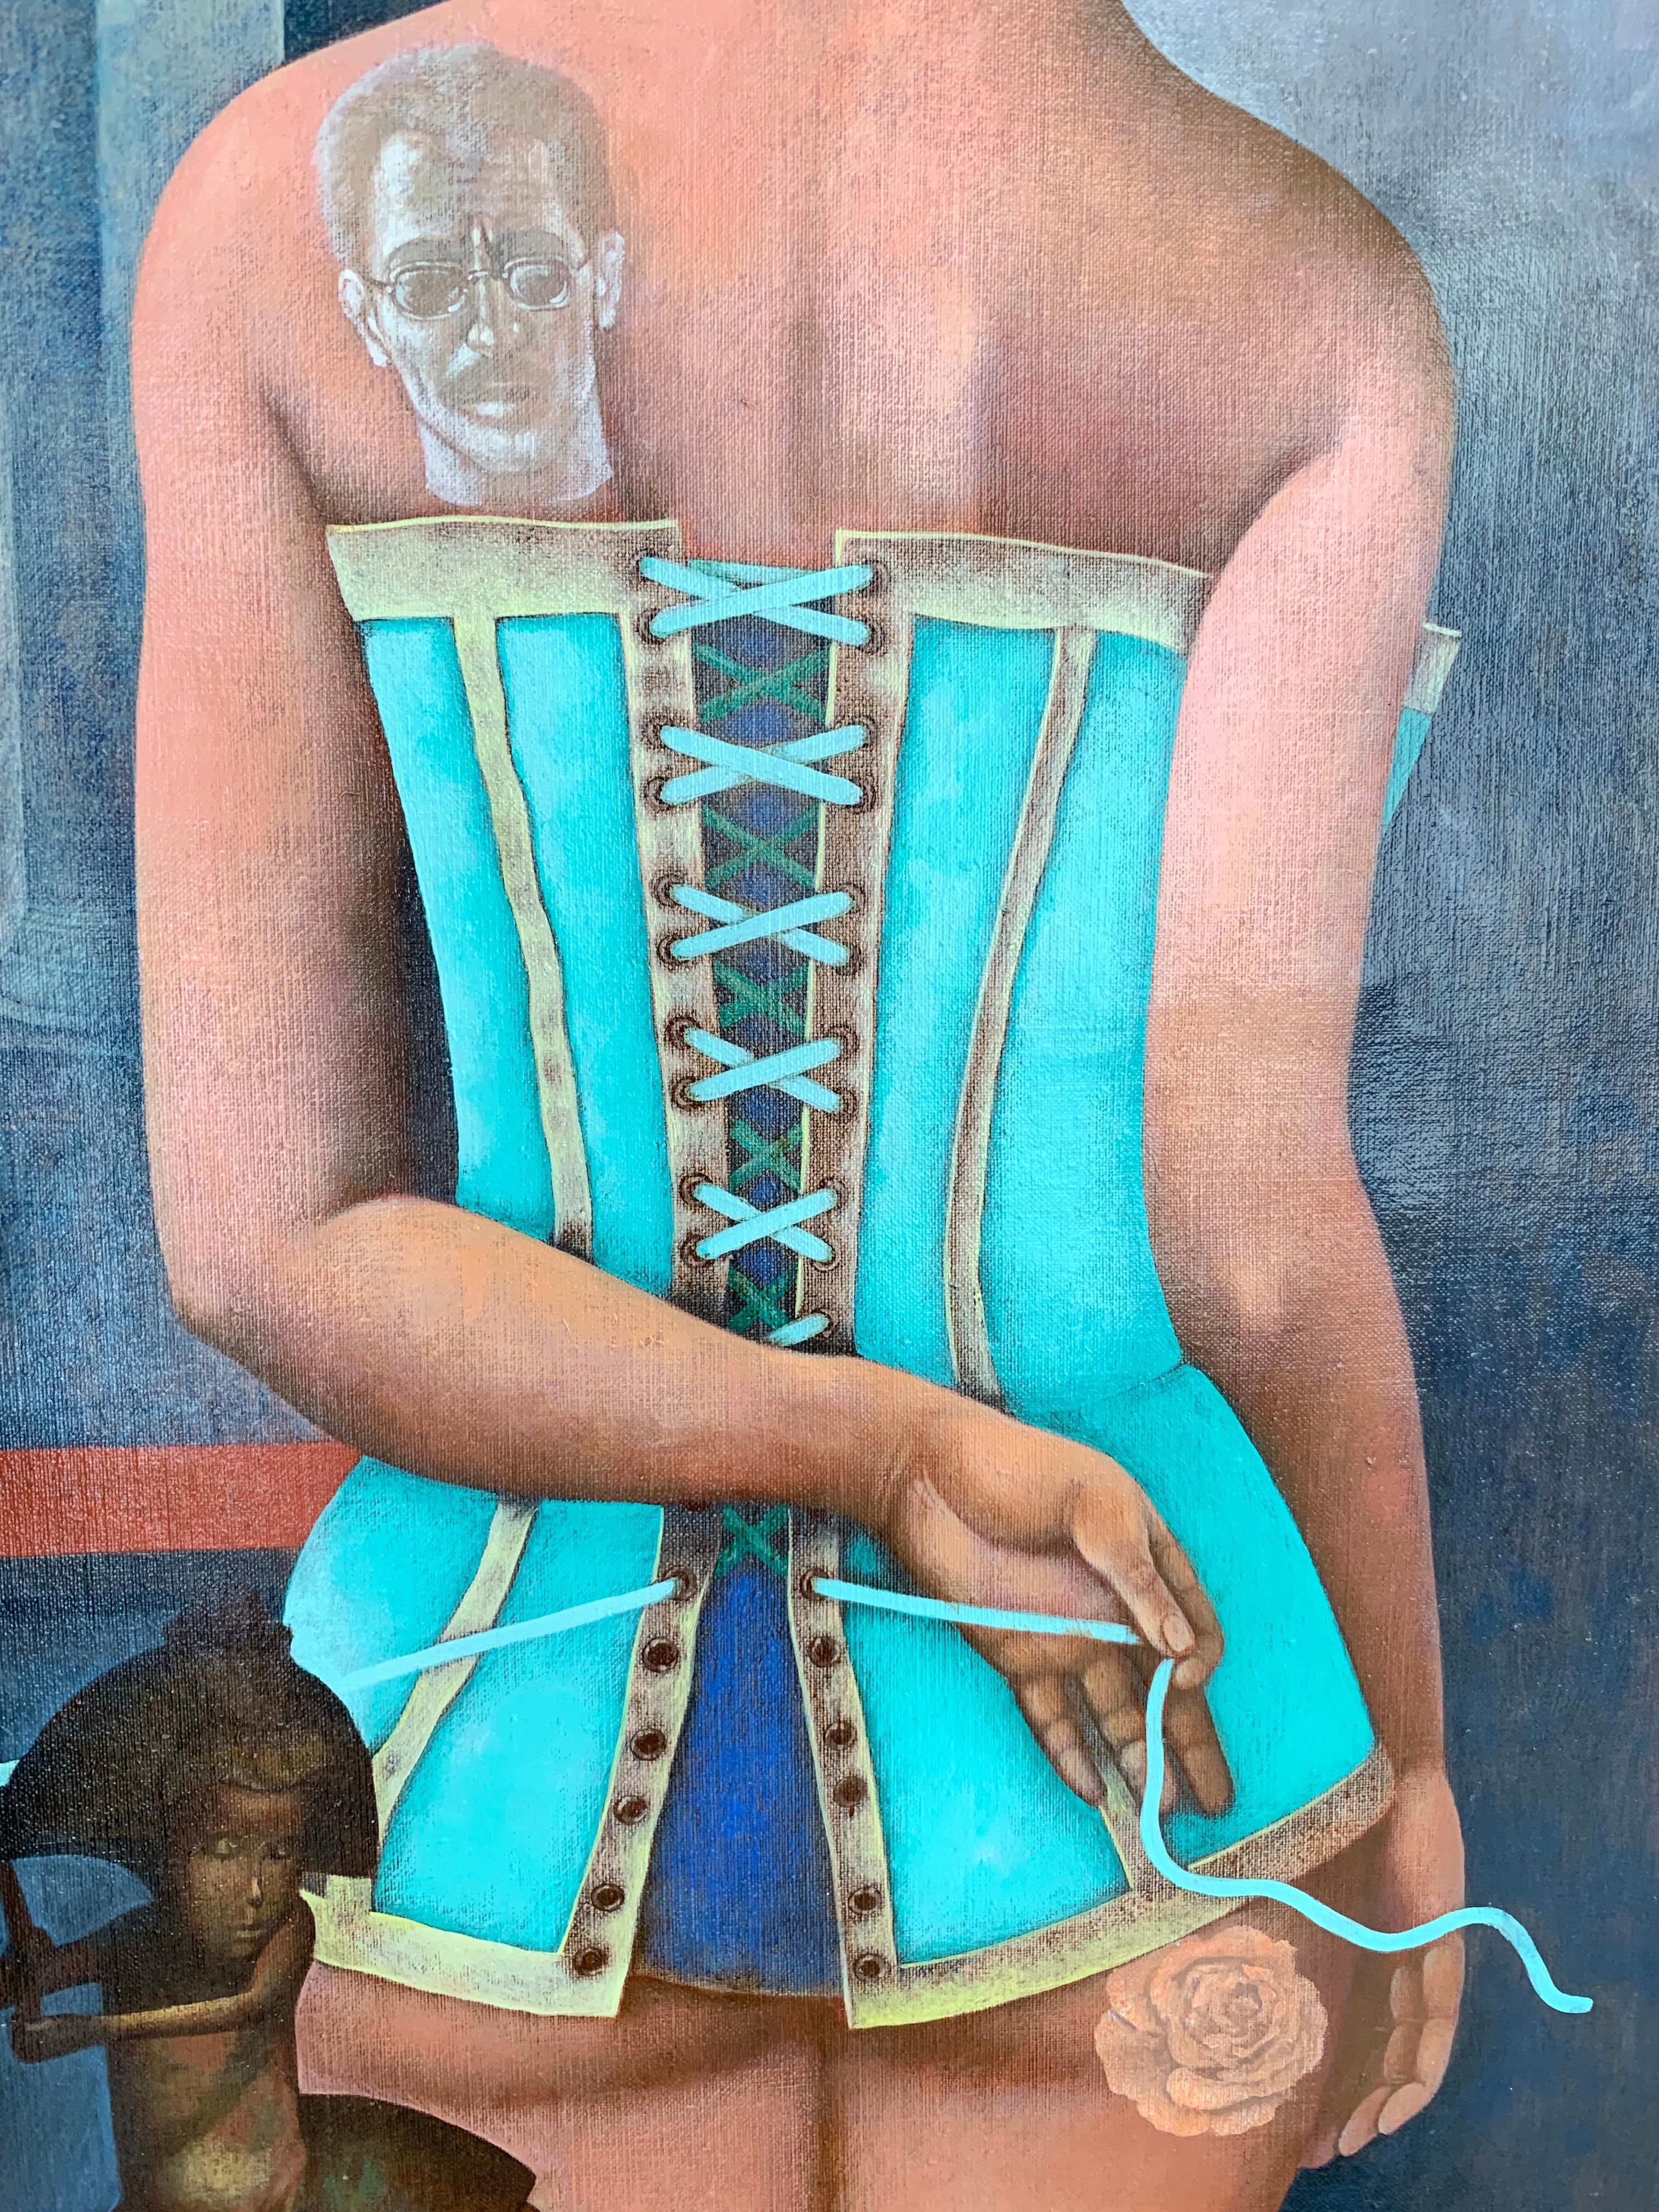 Le Corset - Une jeune fille en corset, de couleur grise, bleue, marron et turquoise - Painting de Igor Fomin